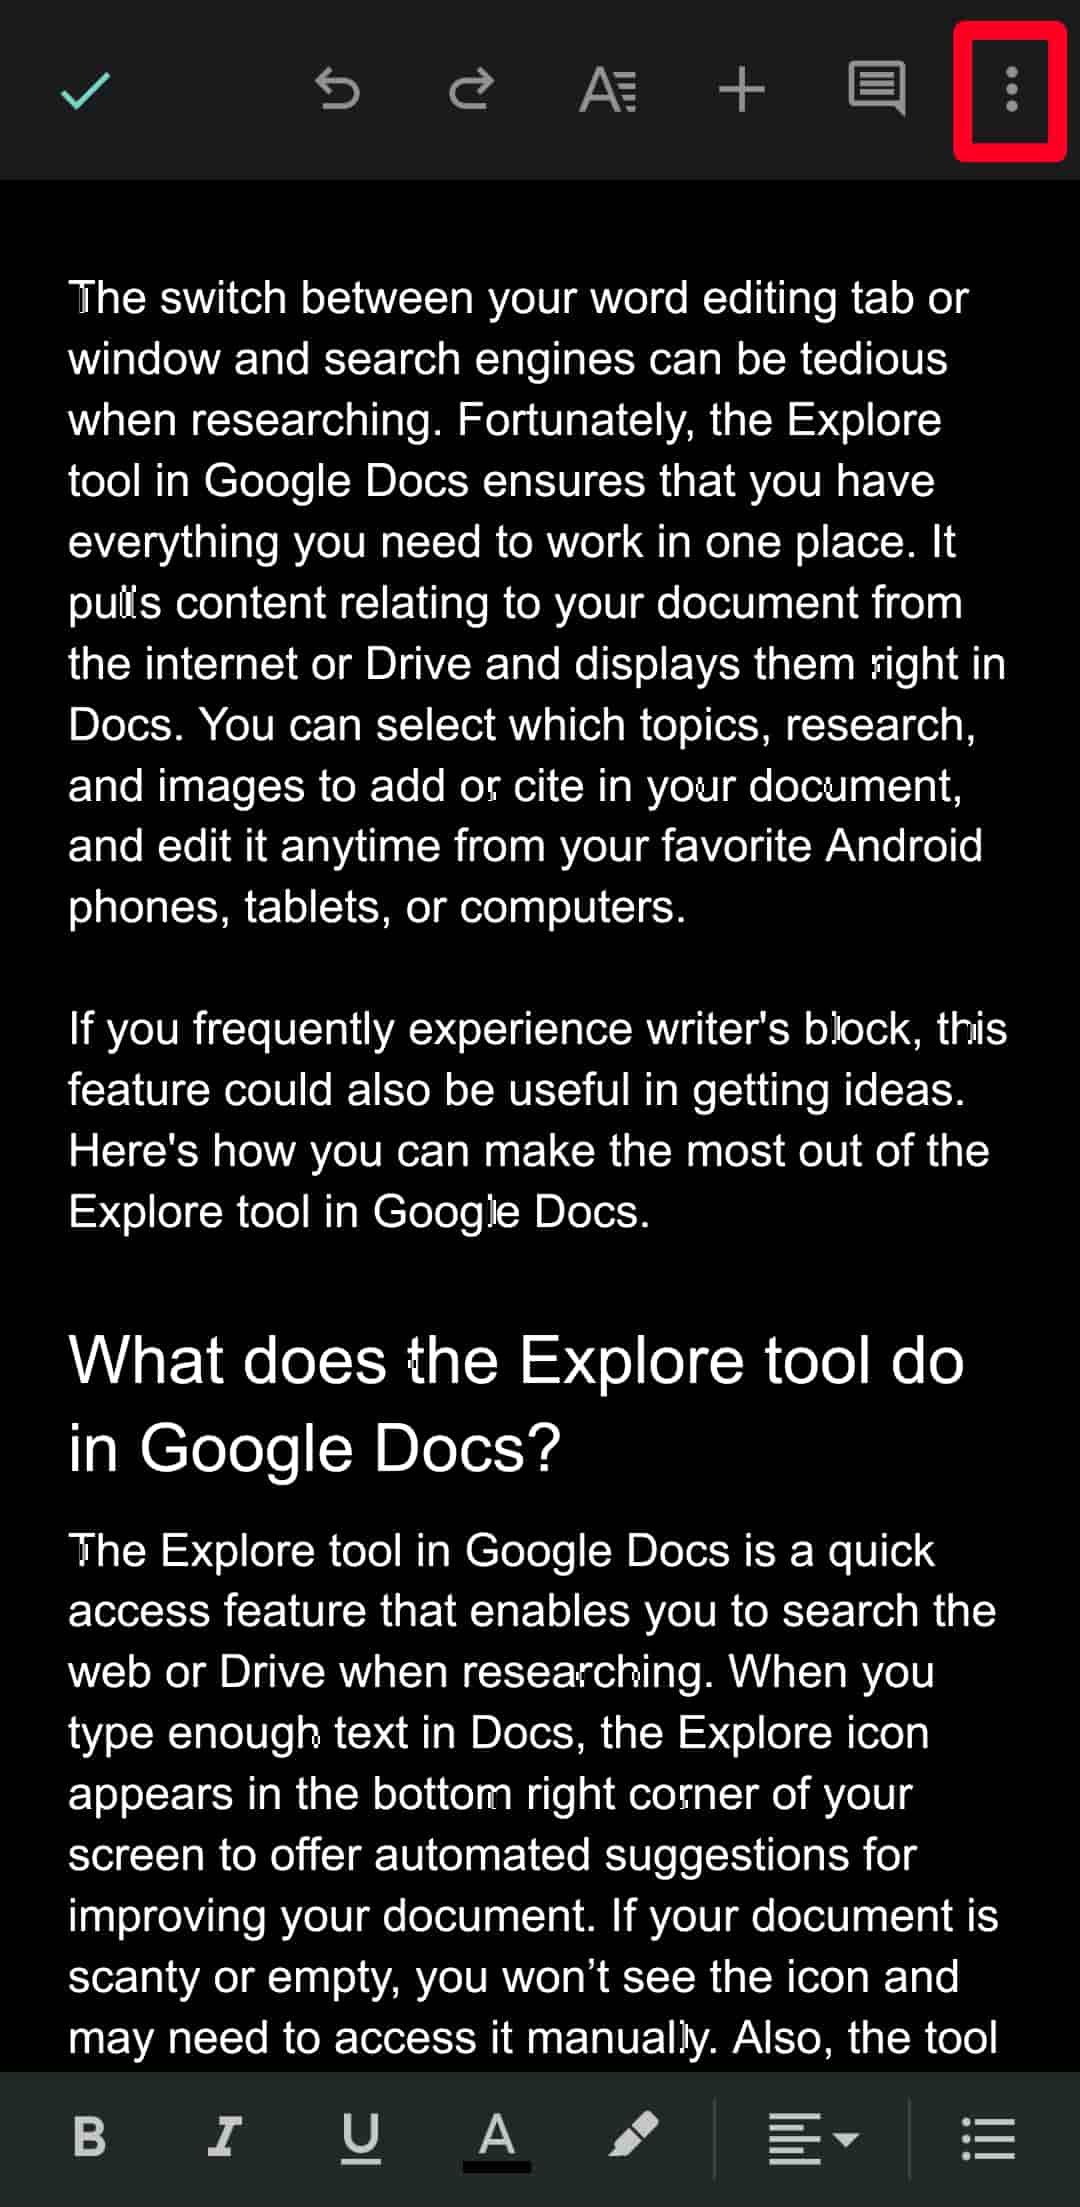 Clique no ícone do menu de três pontos no aplicativo móvel Google Docs para ver mais opções